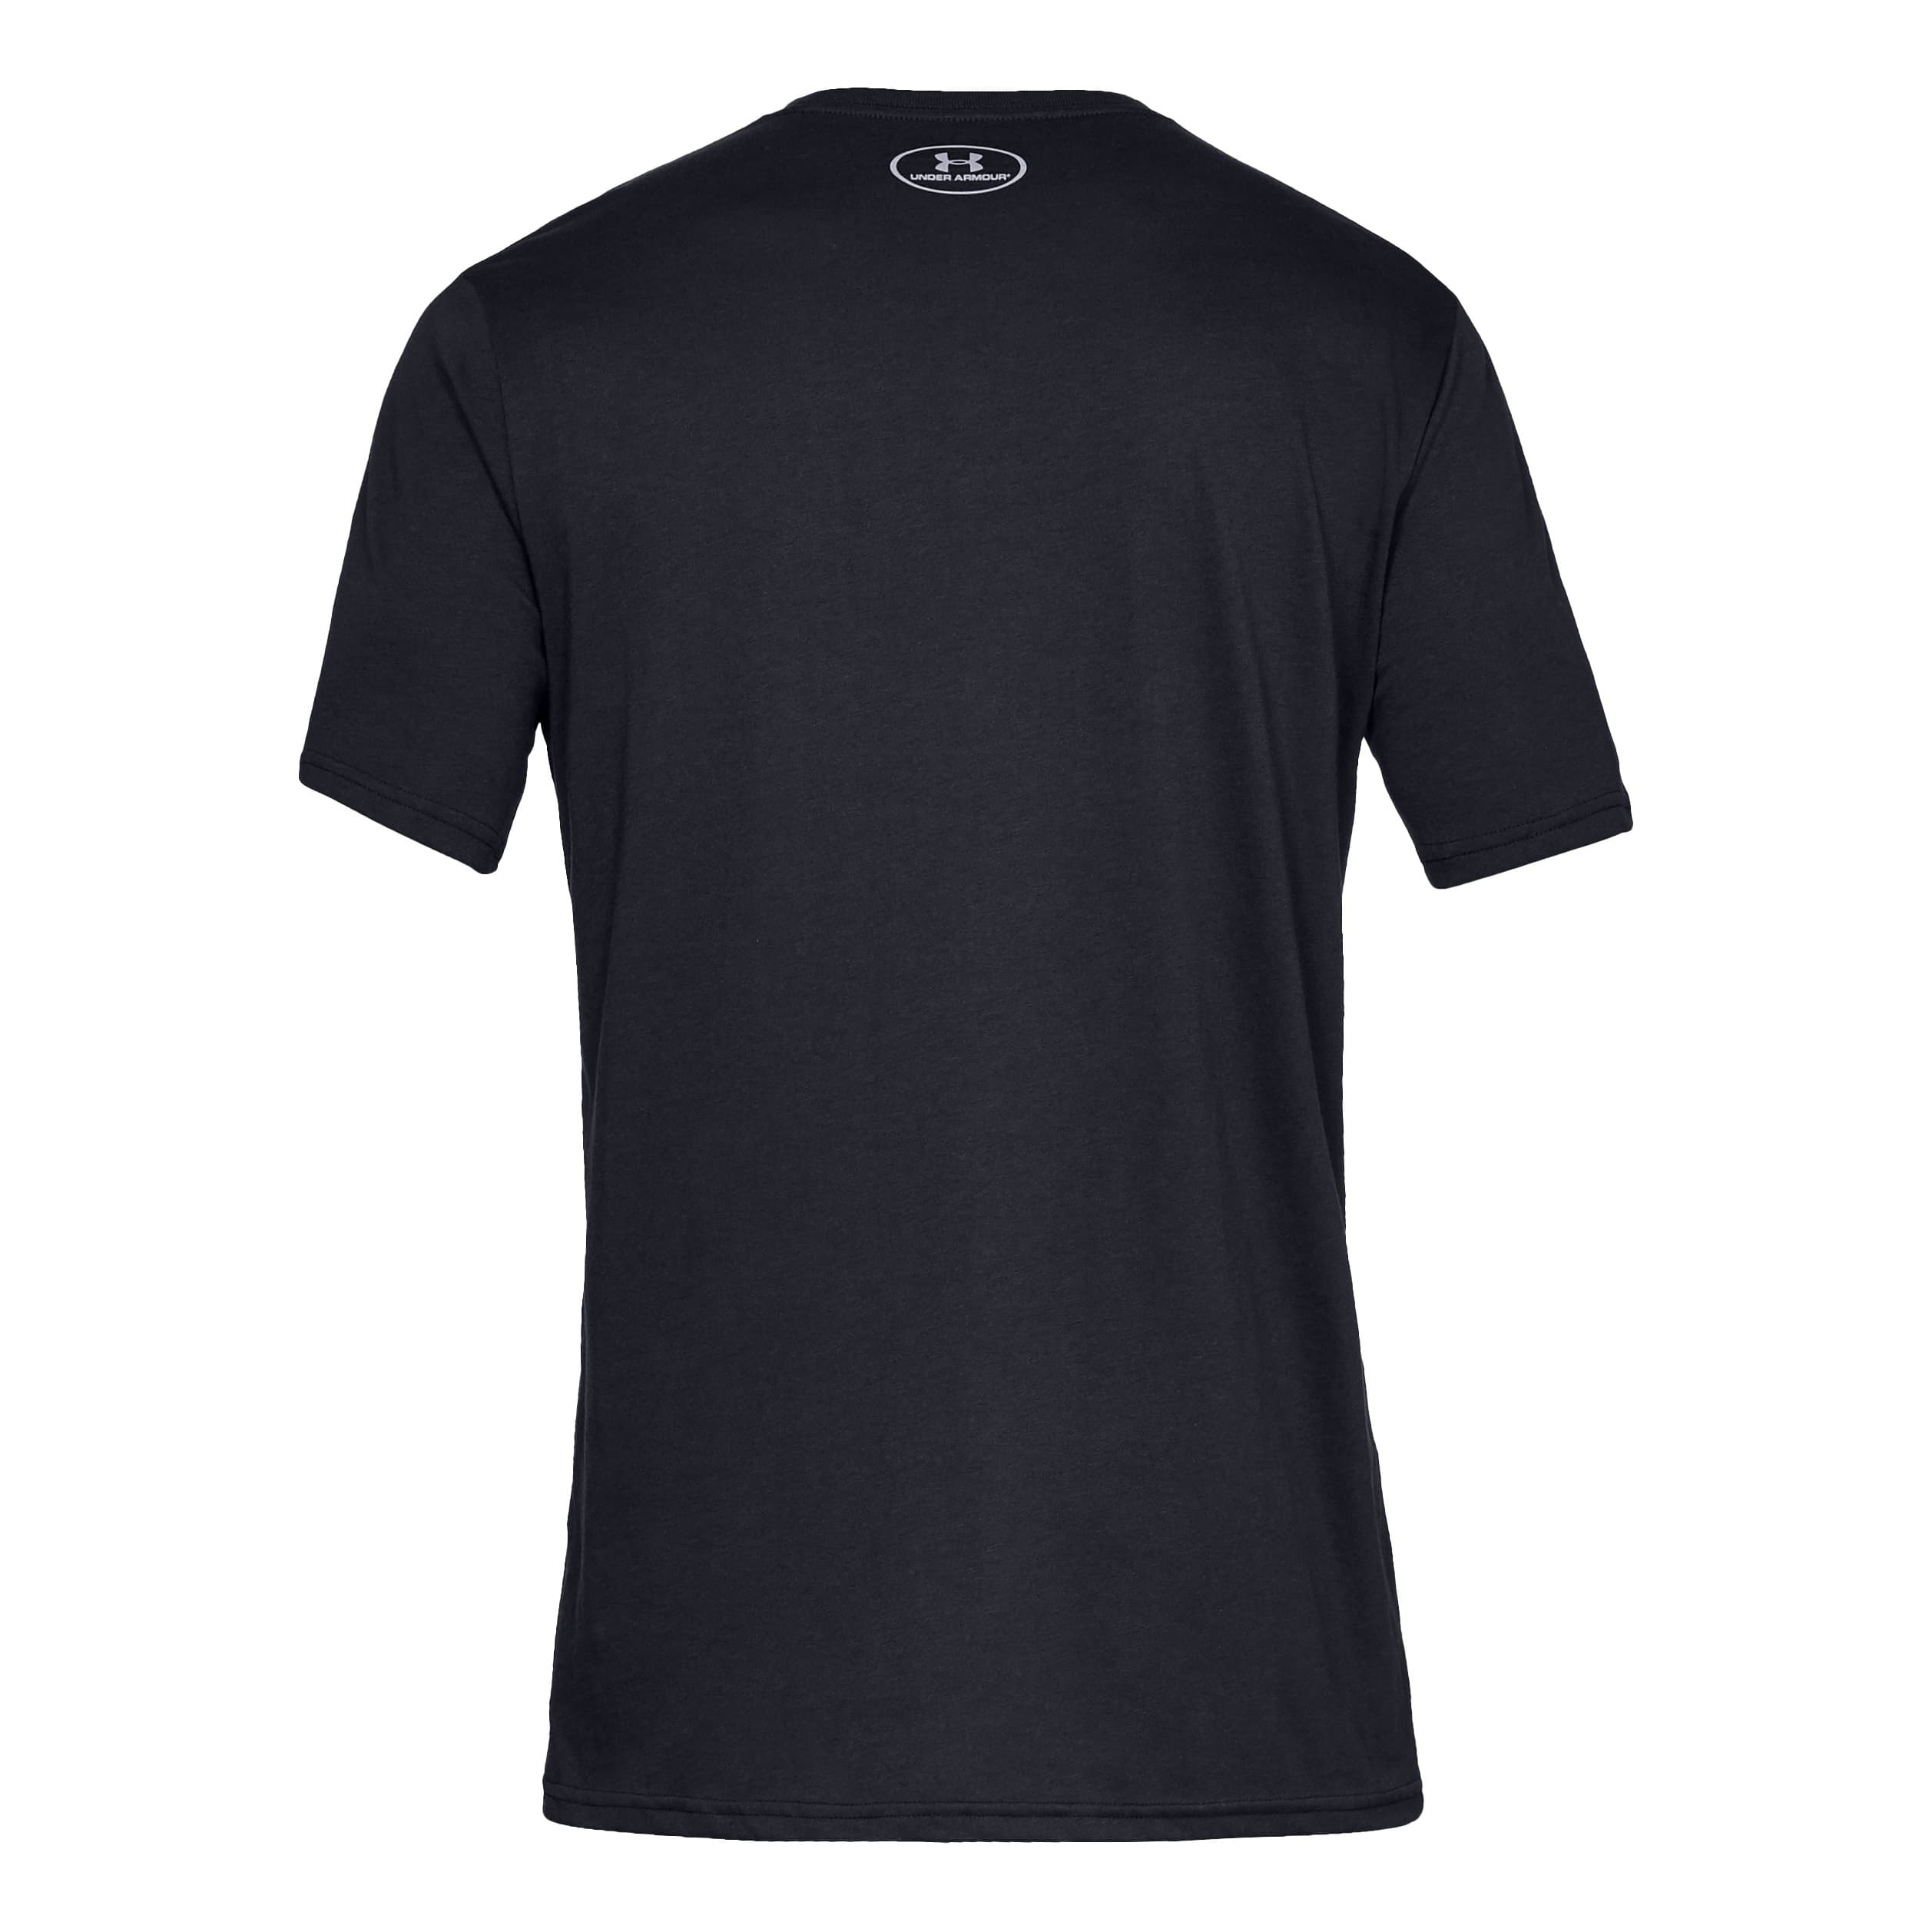 Under Armour Softball Line Dot Short Sleeve T-shirt - The Matador